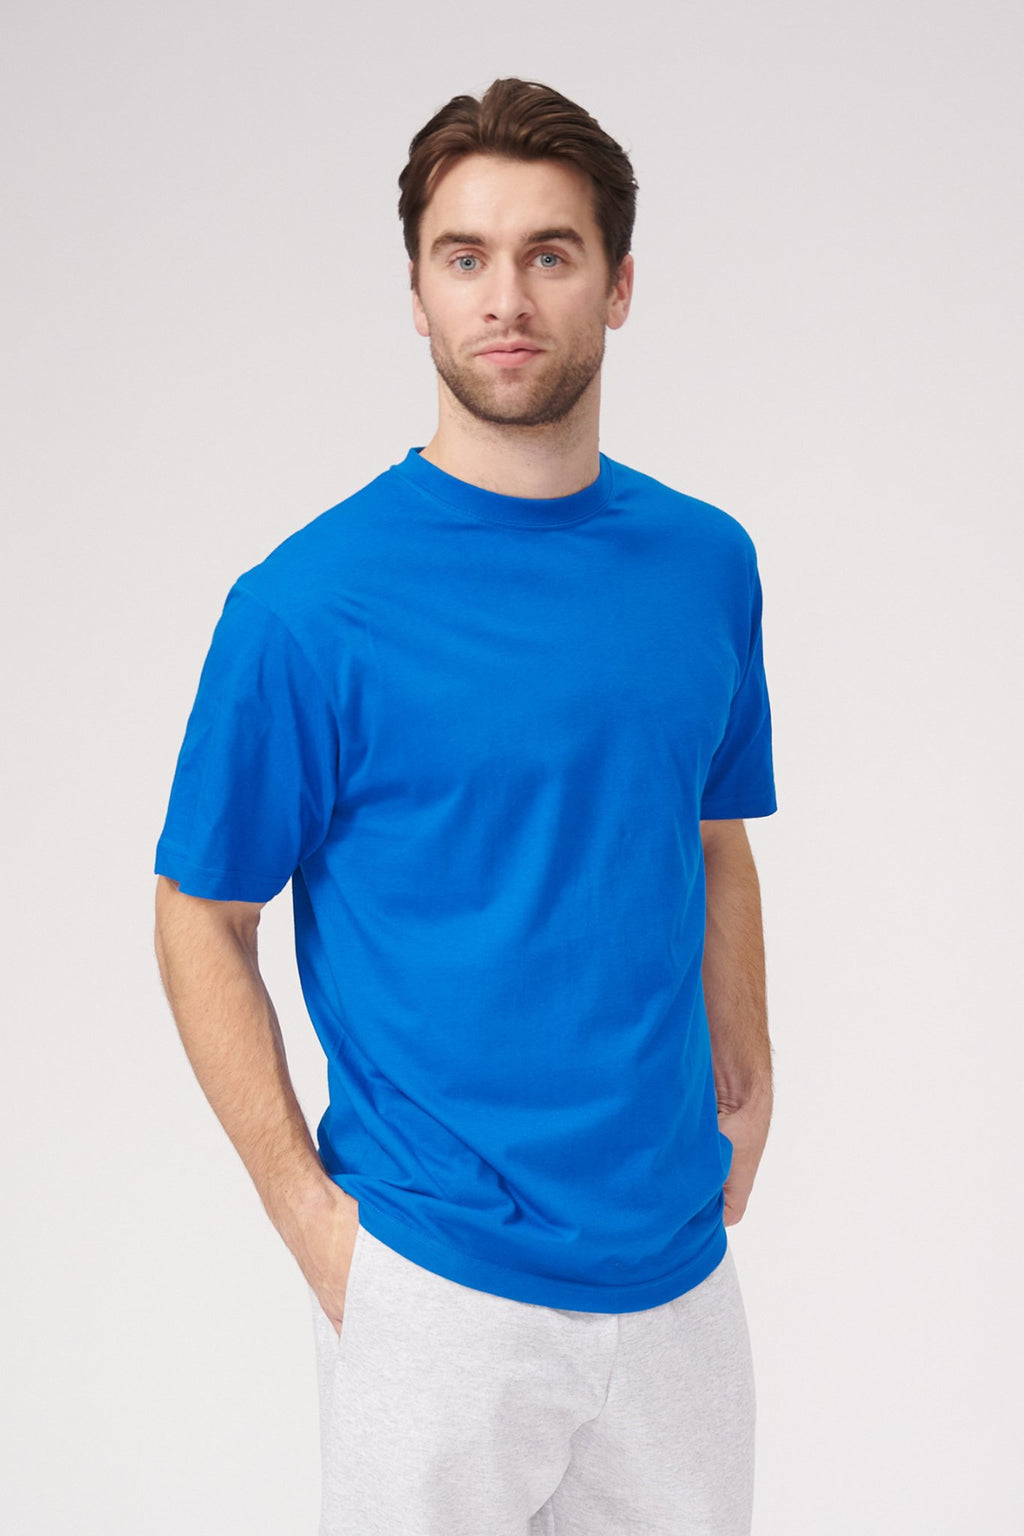 Negabaritiniai marškinėliai - švedų mėlyna spalva